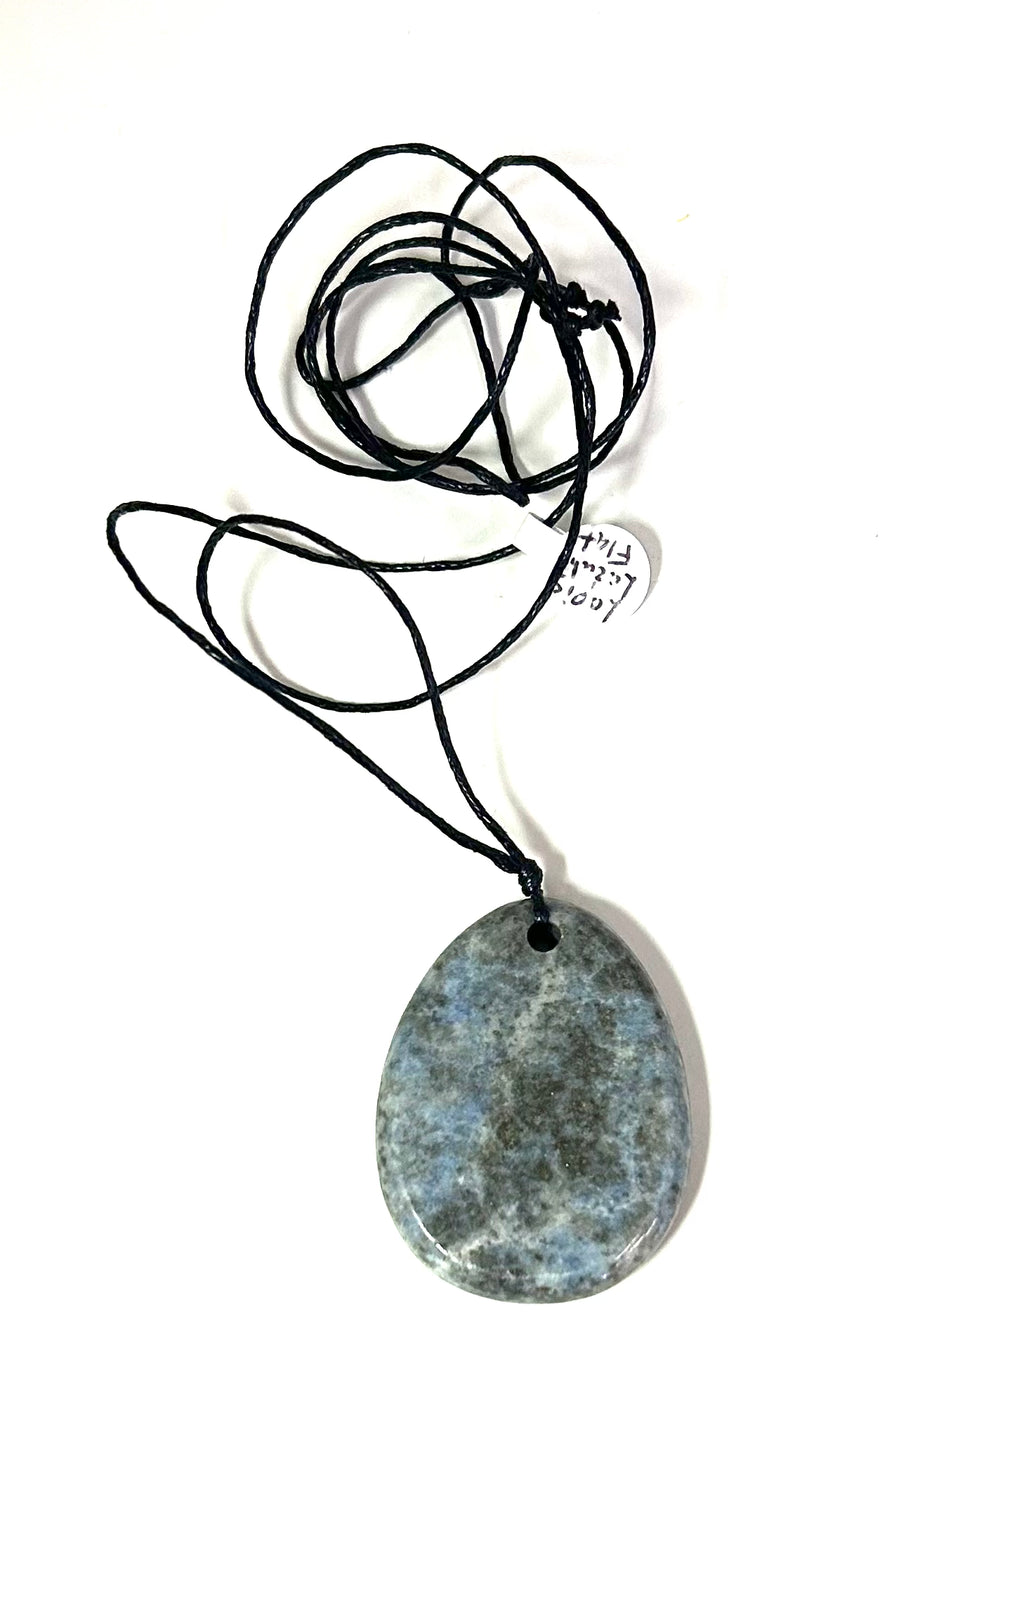 Lapis Lazuli Flat Pendant Necklace - Lighten Up Shop